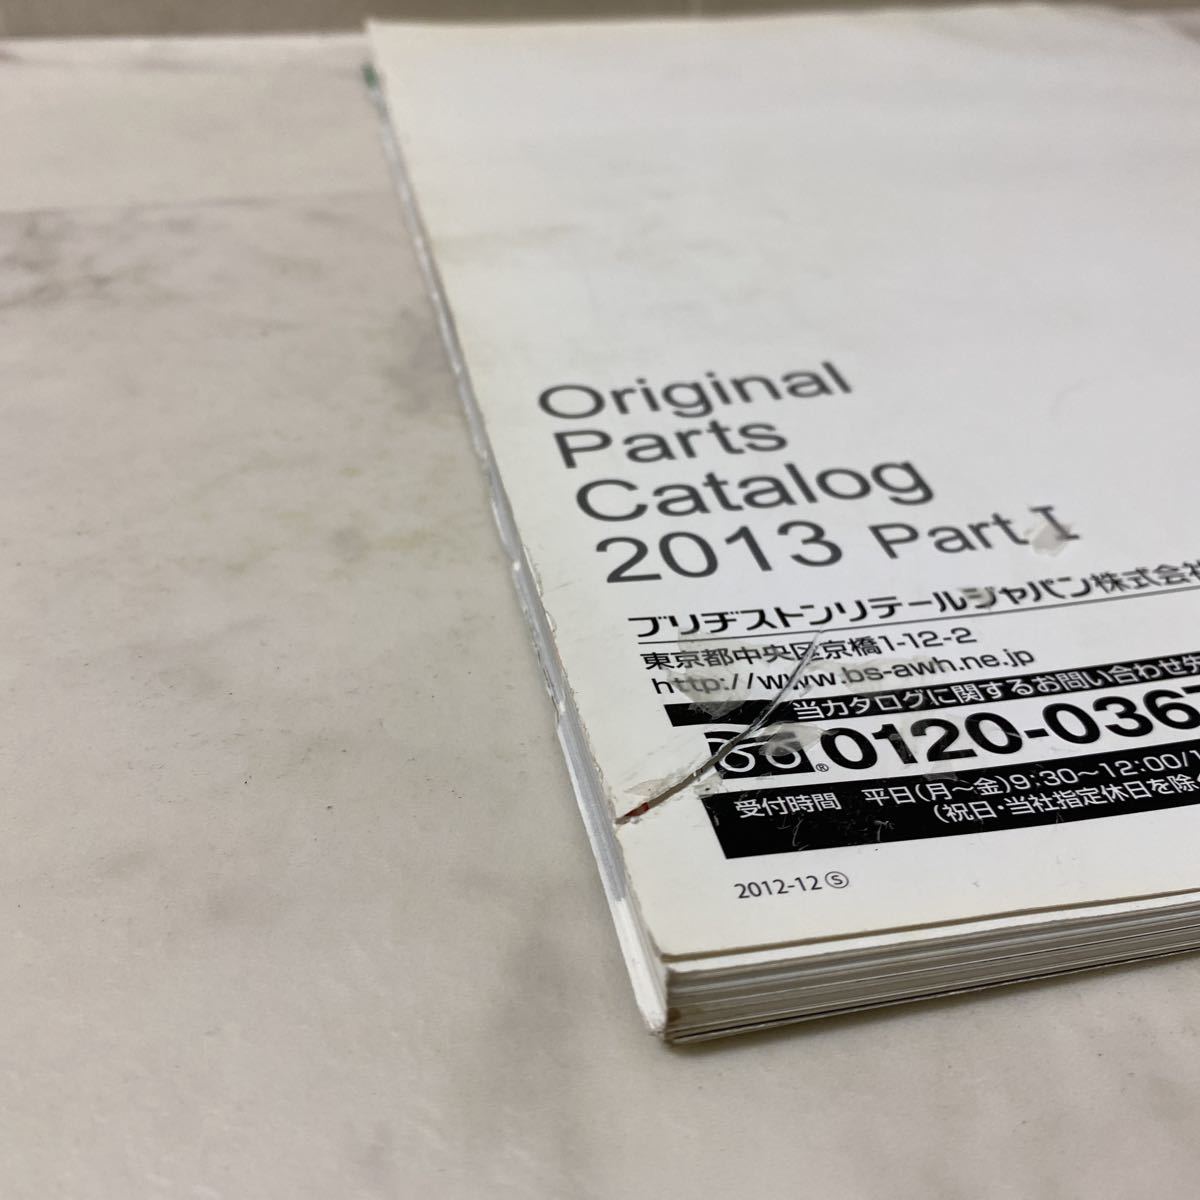 す上96 BRIDGESTONE Original Parts Catalog ブリヂストン オリジナルパーツカタログ 2013 Part Ⅰ 販売店用 WHEEL ホイール_画像4